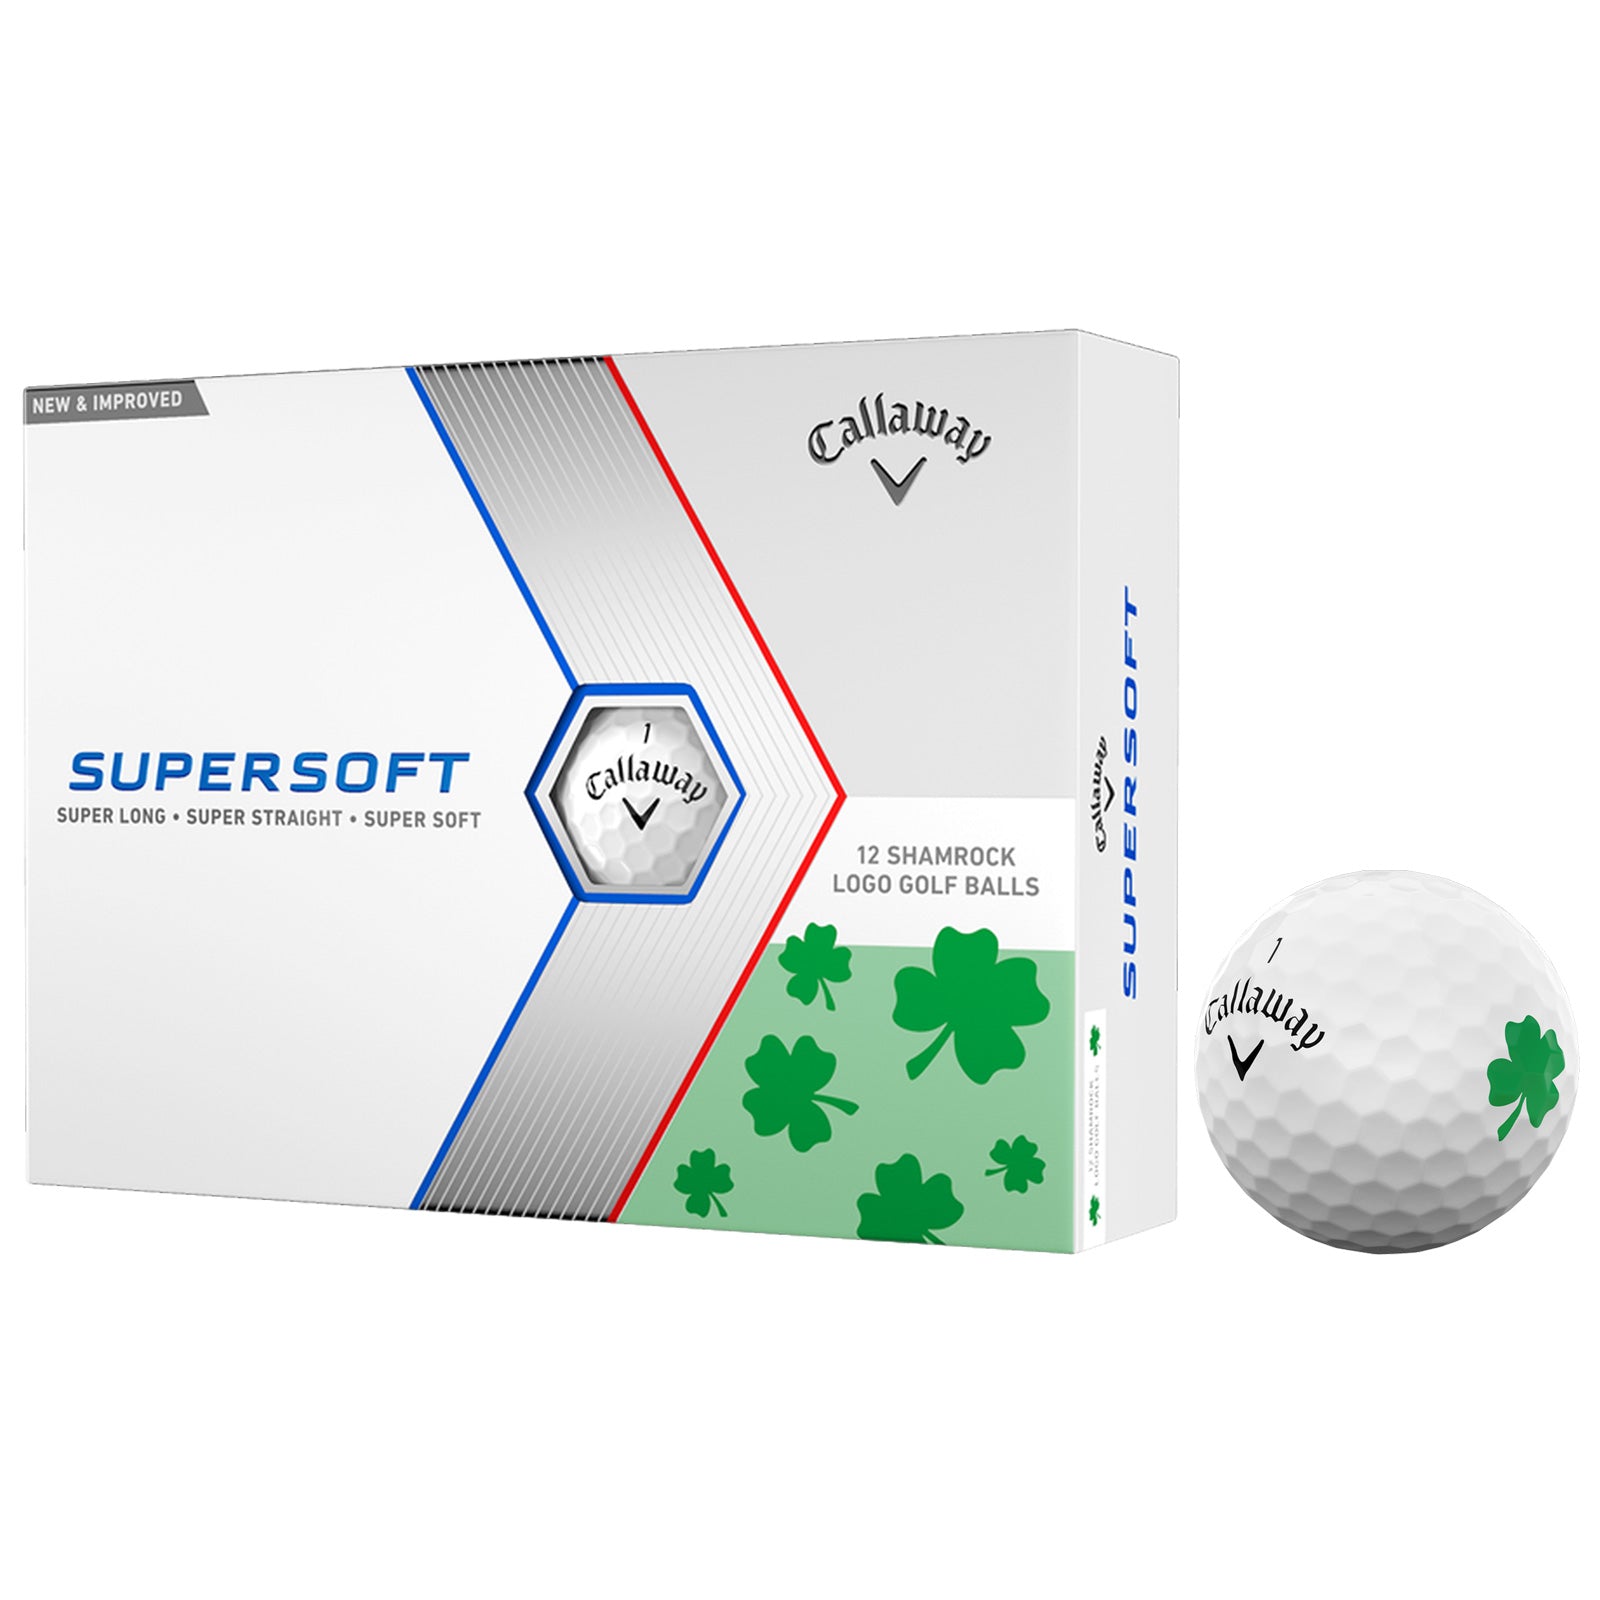 Callaway Supersoft Golf Balls - Shamrock